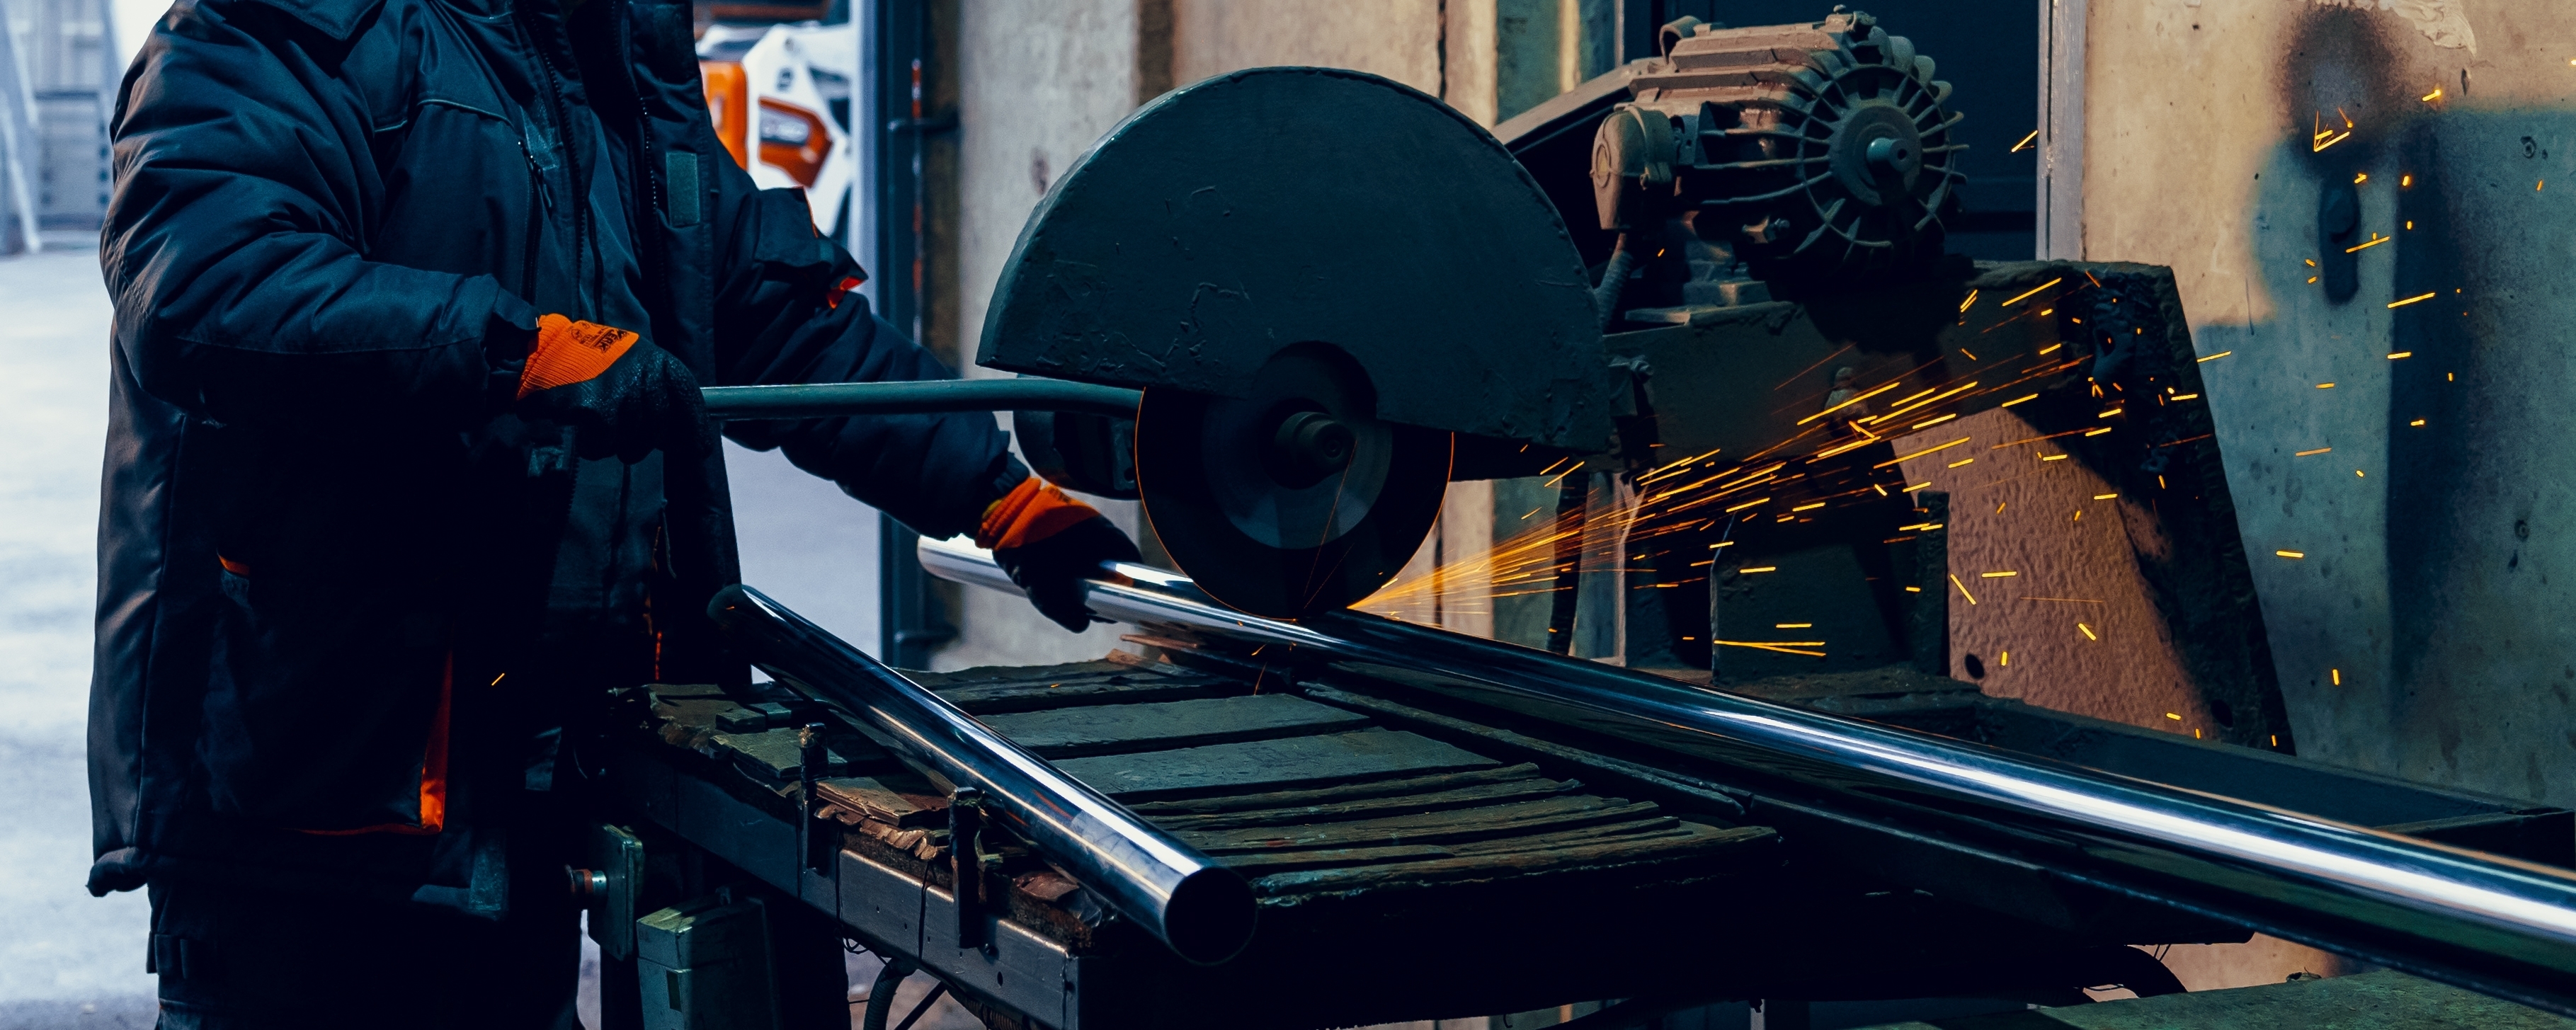 Благодаря современному сварочному оборудованию опыт рязанского завода вошёл в лучшие прак тики нацпроекта «Производительность труда»